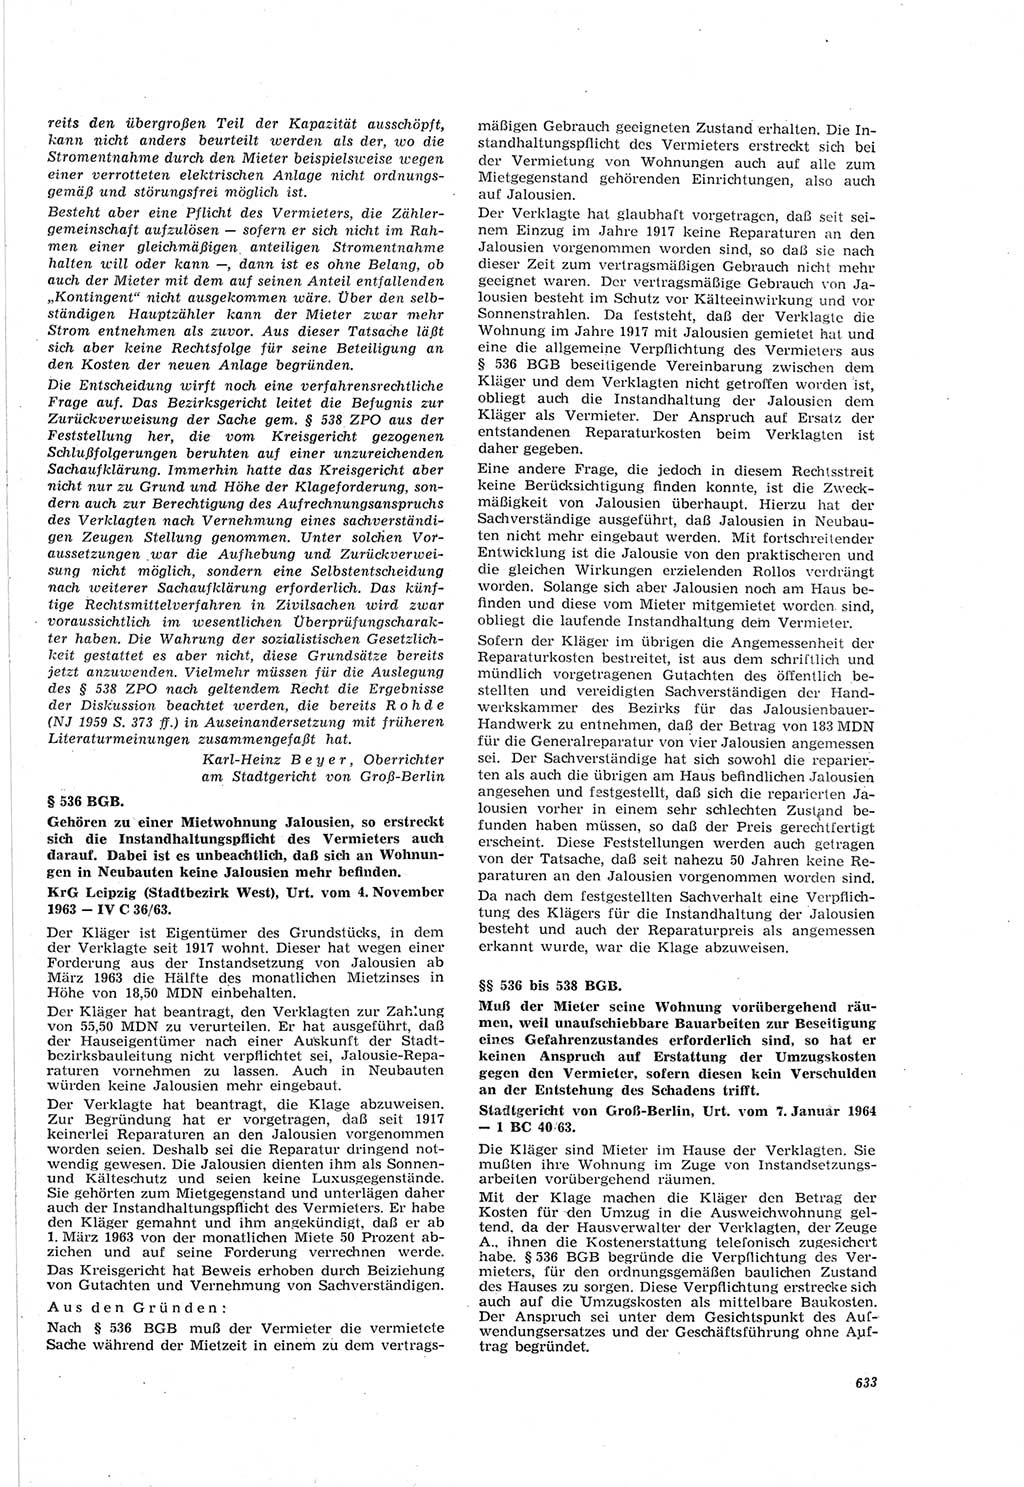 Neue Justiz (NJ), Zeitschrift für Recht und Rechtswissenschaft [Deutsche Demokratische Republik (DDR)], 18. Jahrgang 1964, Seite 633 (NJ DDR 1964, S. 633)